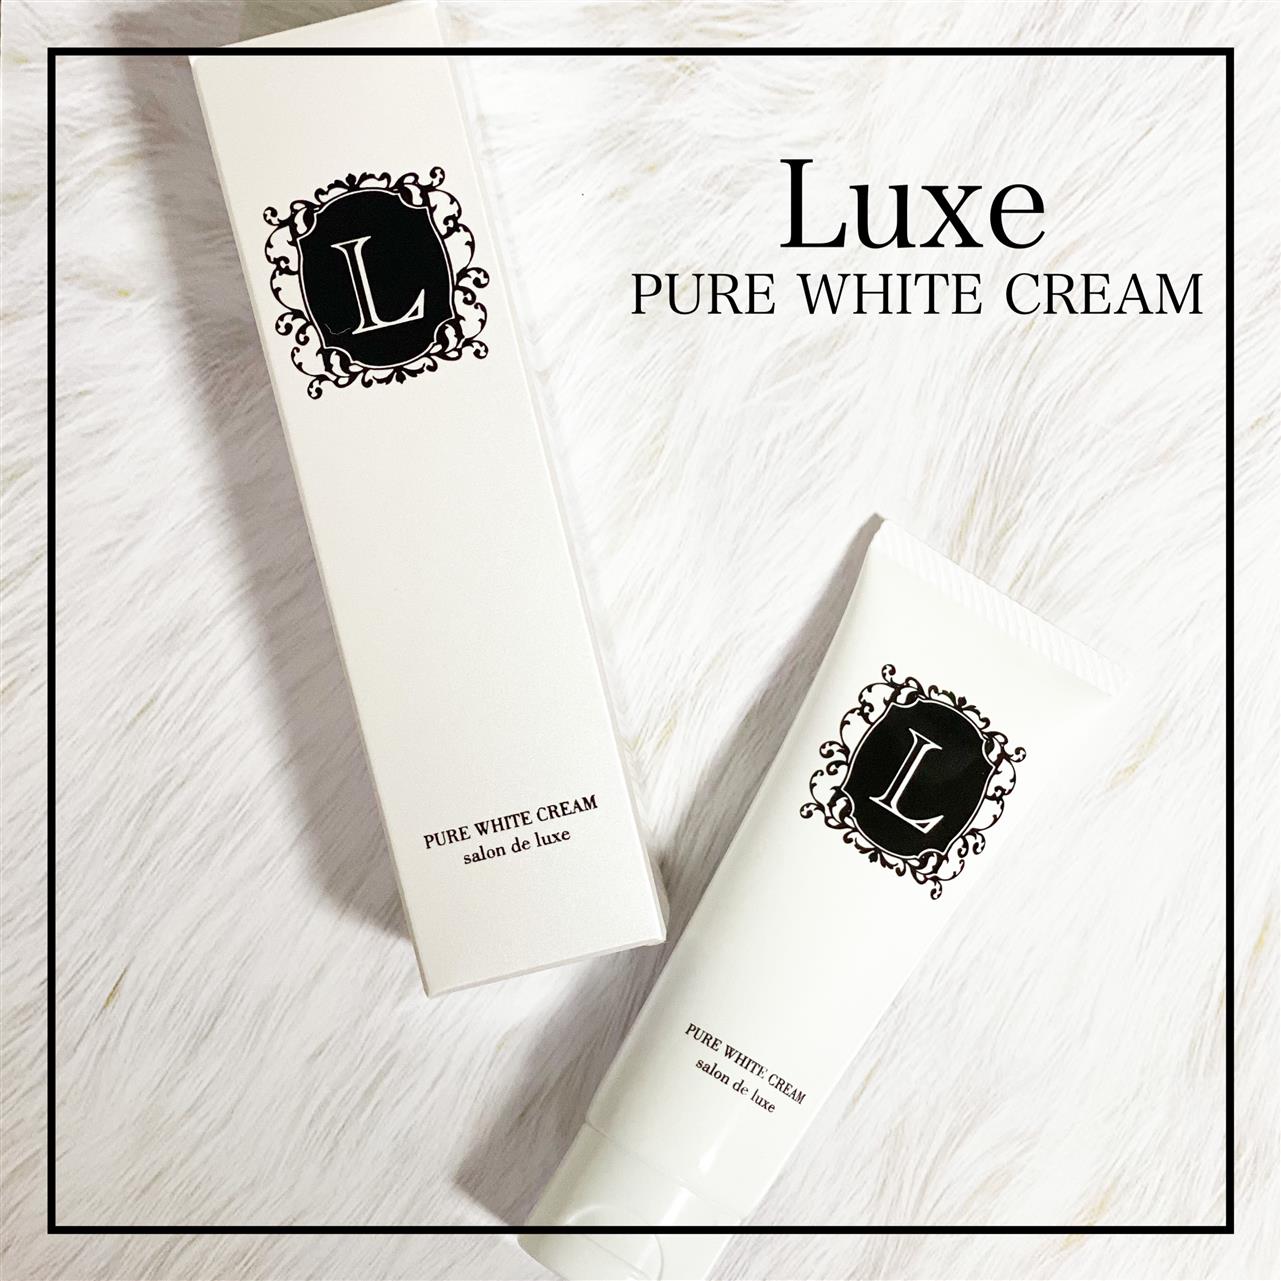 Luxe PURE WHITE CREAM